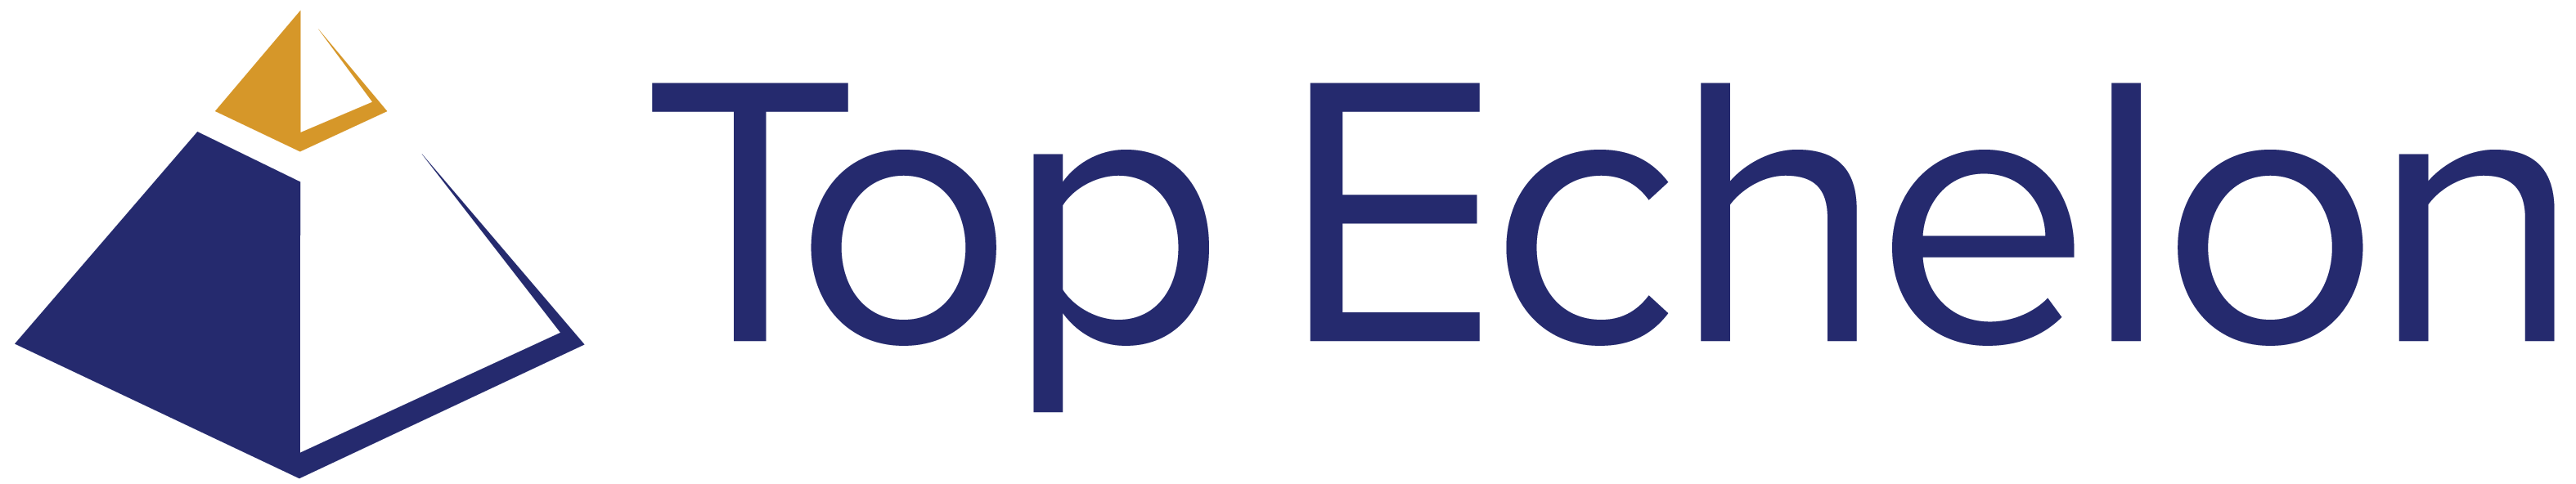 Top Echelon Logo Color